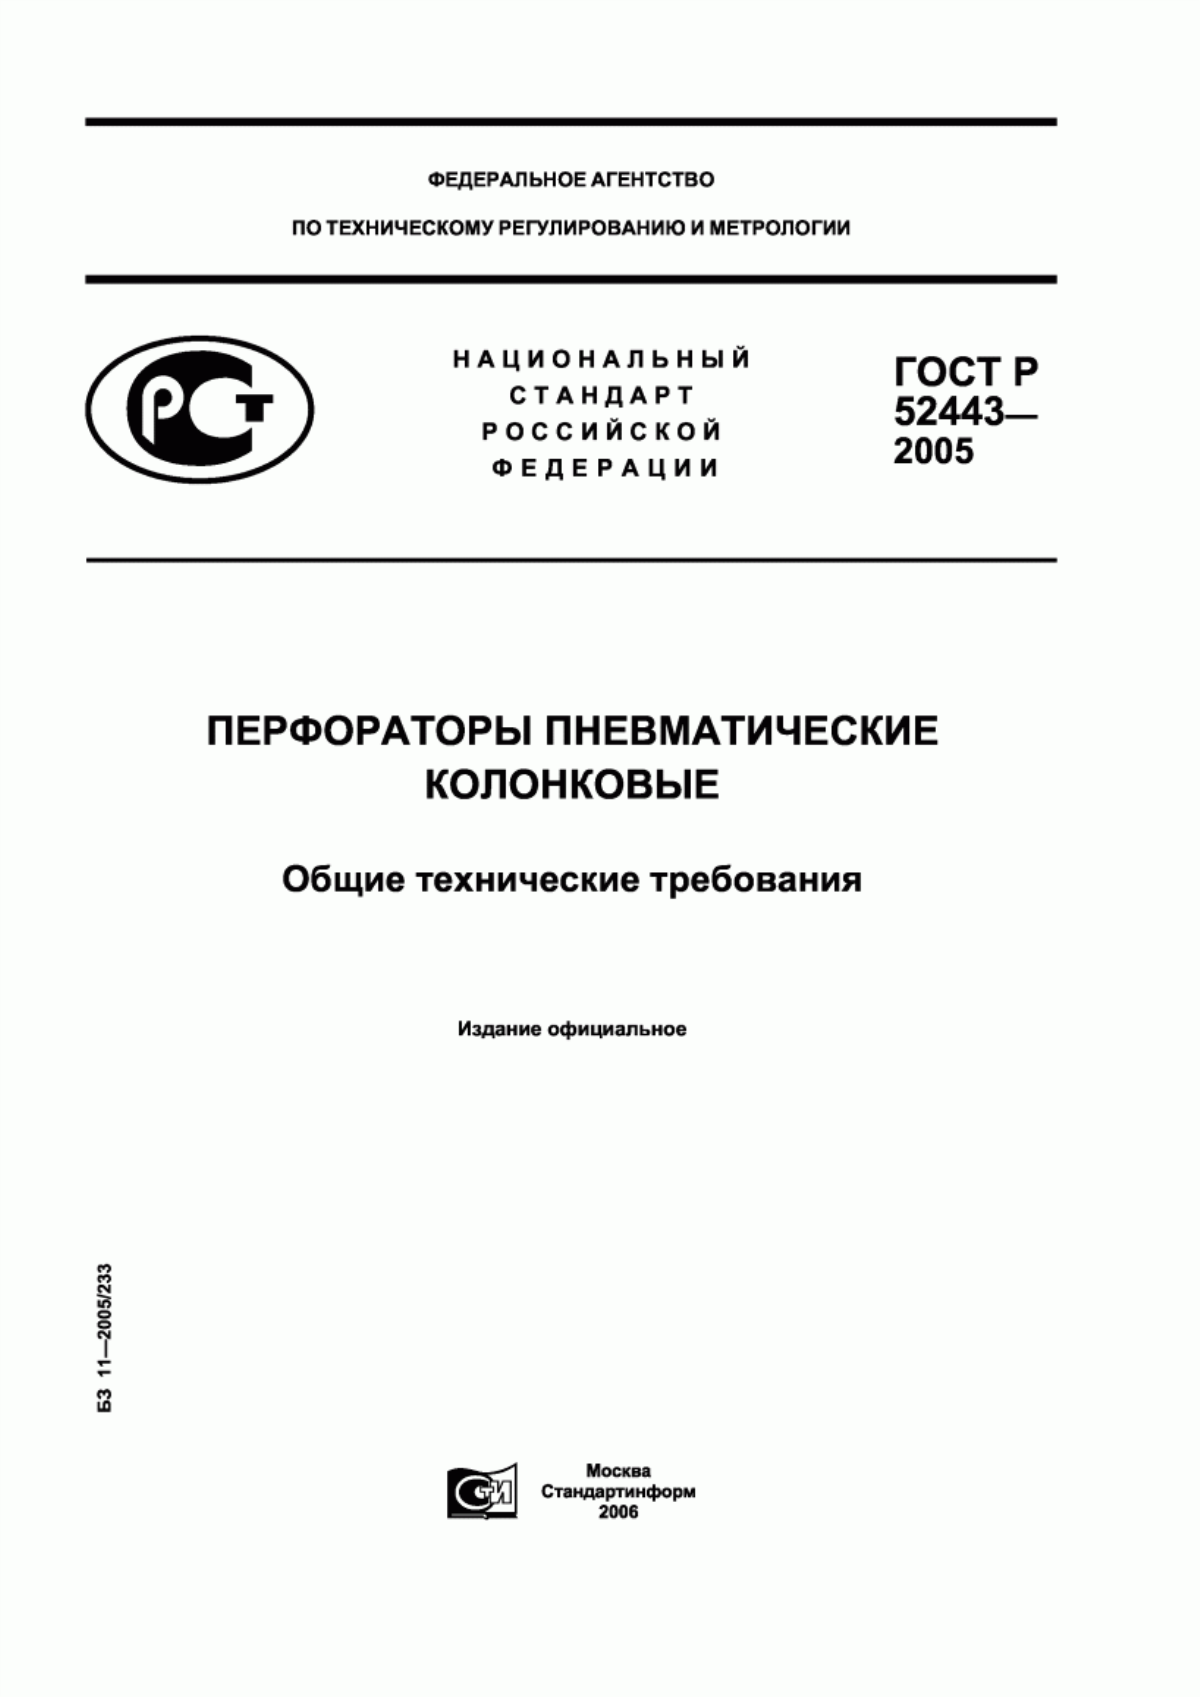 ГОСТ Р 52443-2005 Перфораторы пневматические колонковые. Общие технические требования